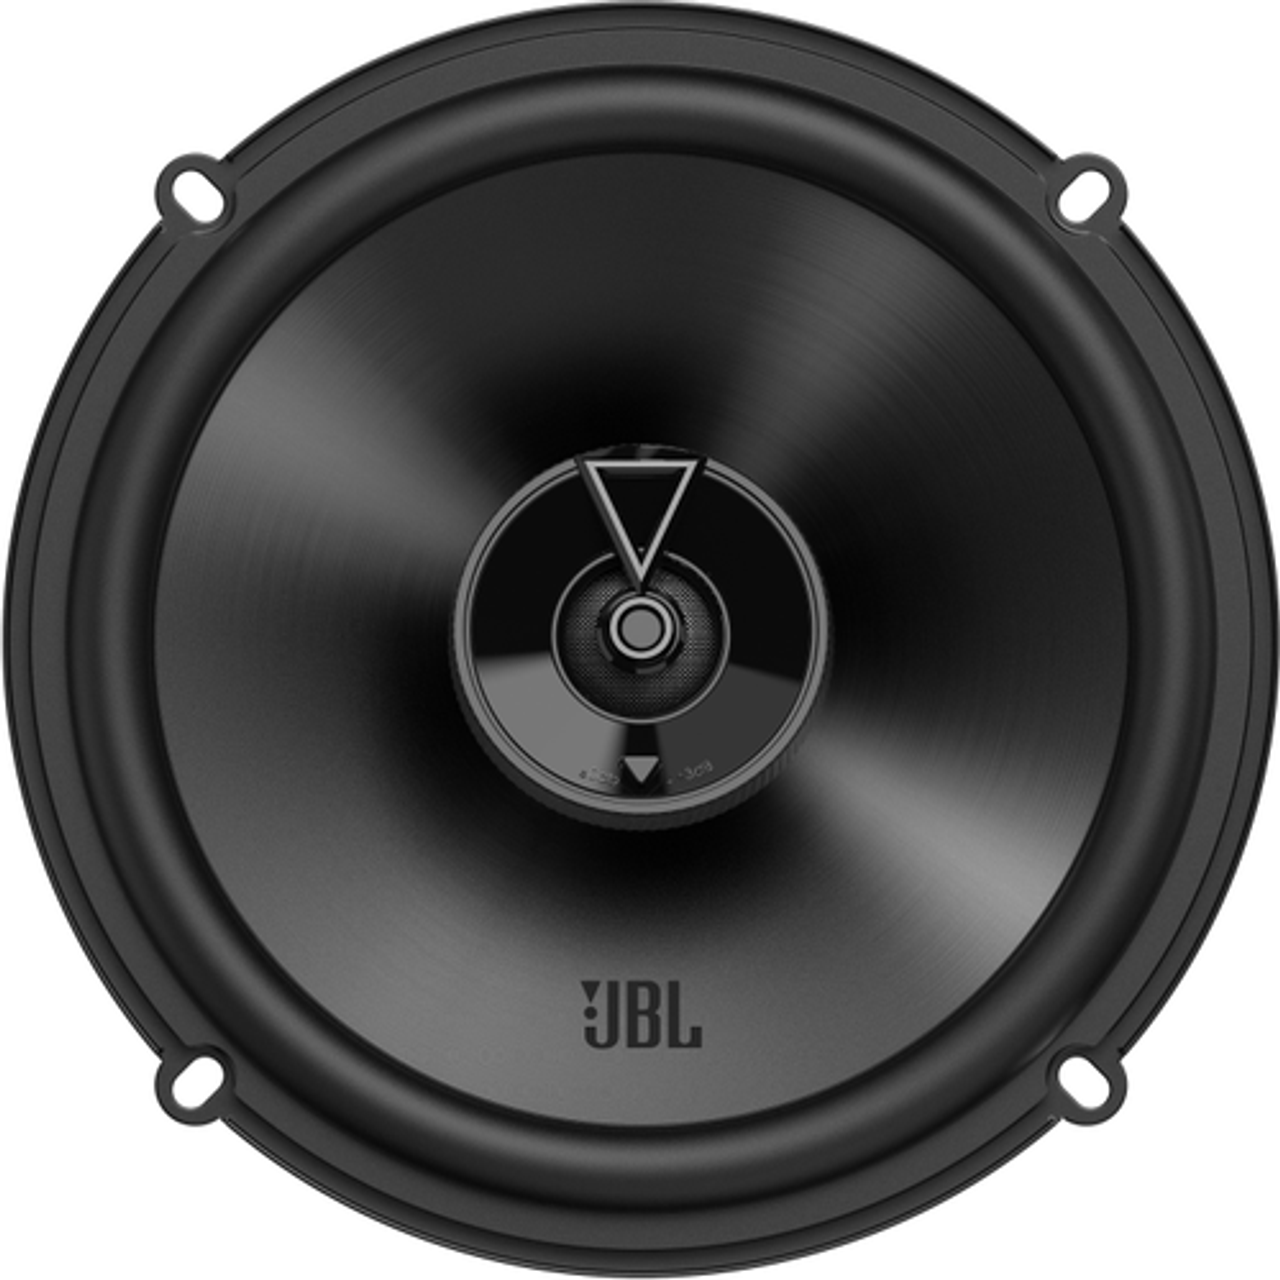 JBL - 6-1/2” Two-way car audio speaker - Black